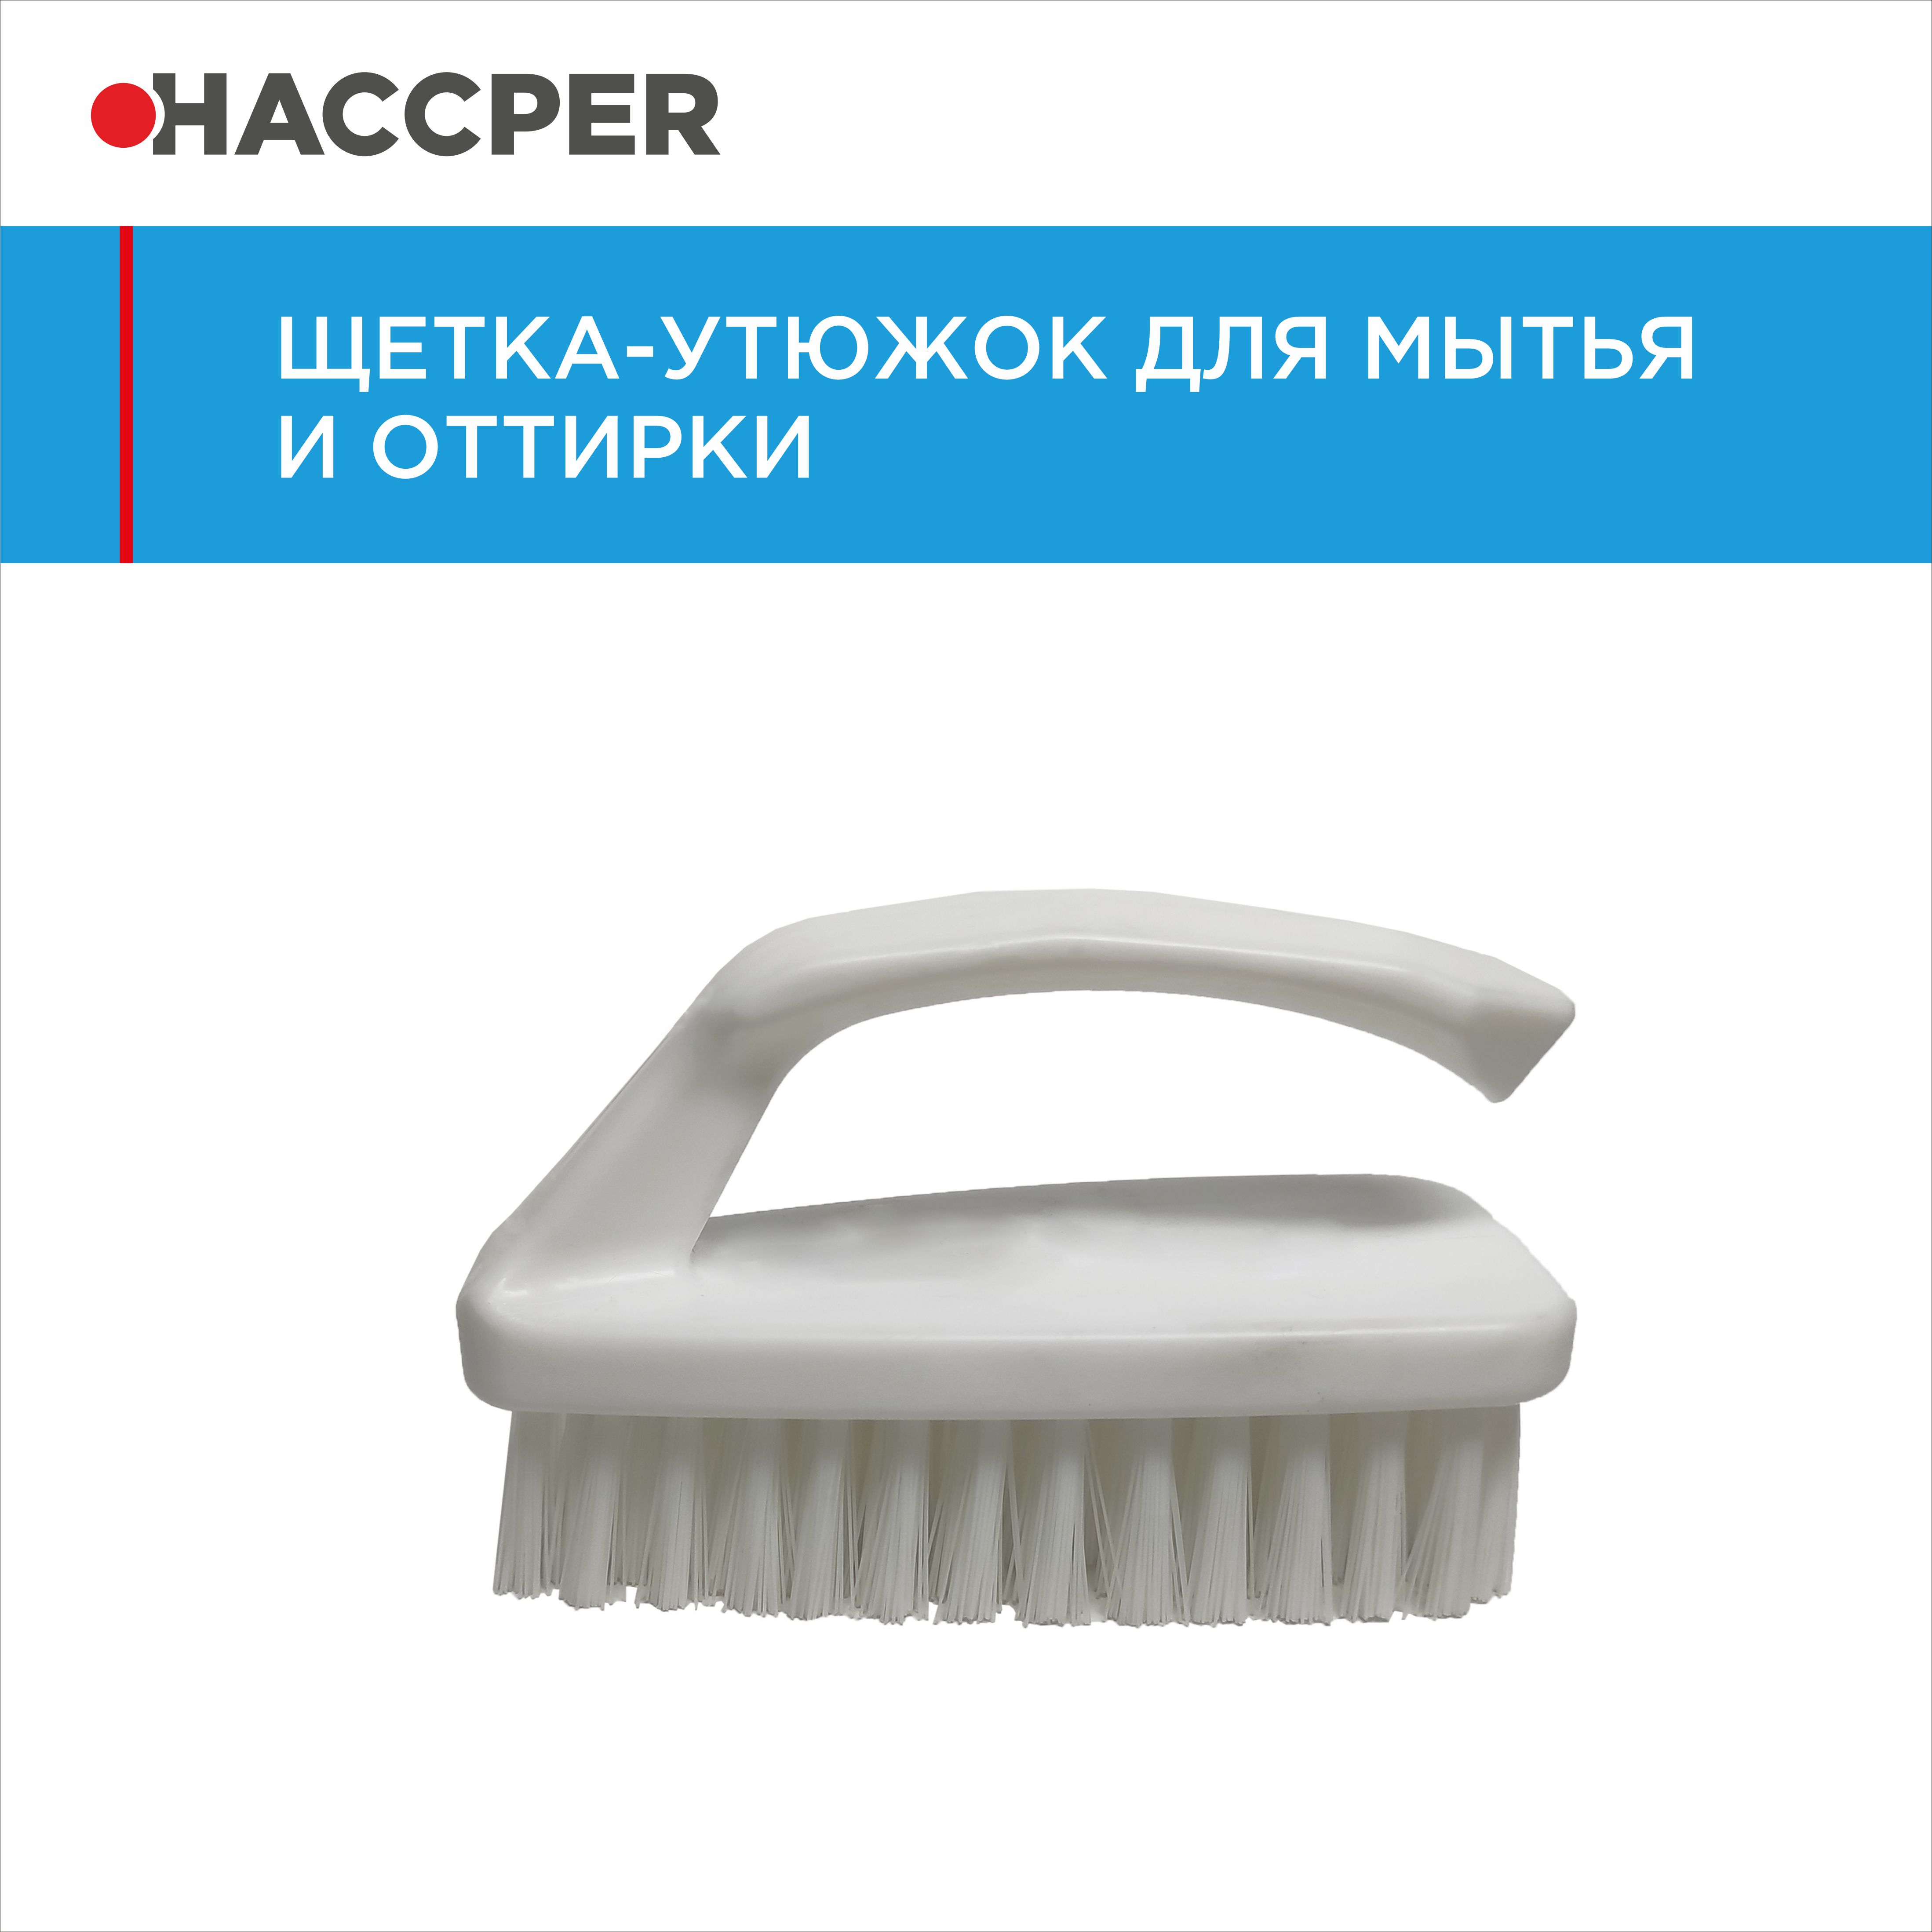 Щетка-утюжок HACCPER для мытья и оттирки, белая